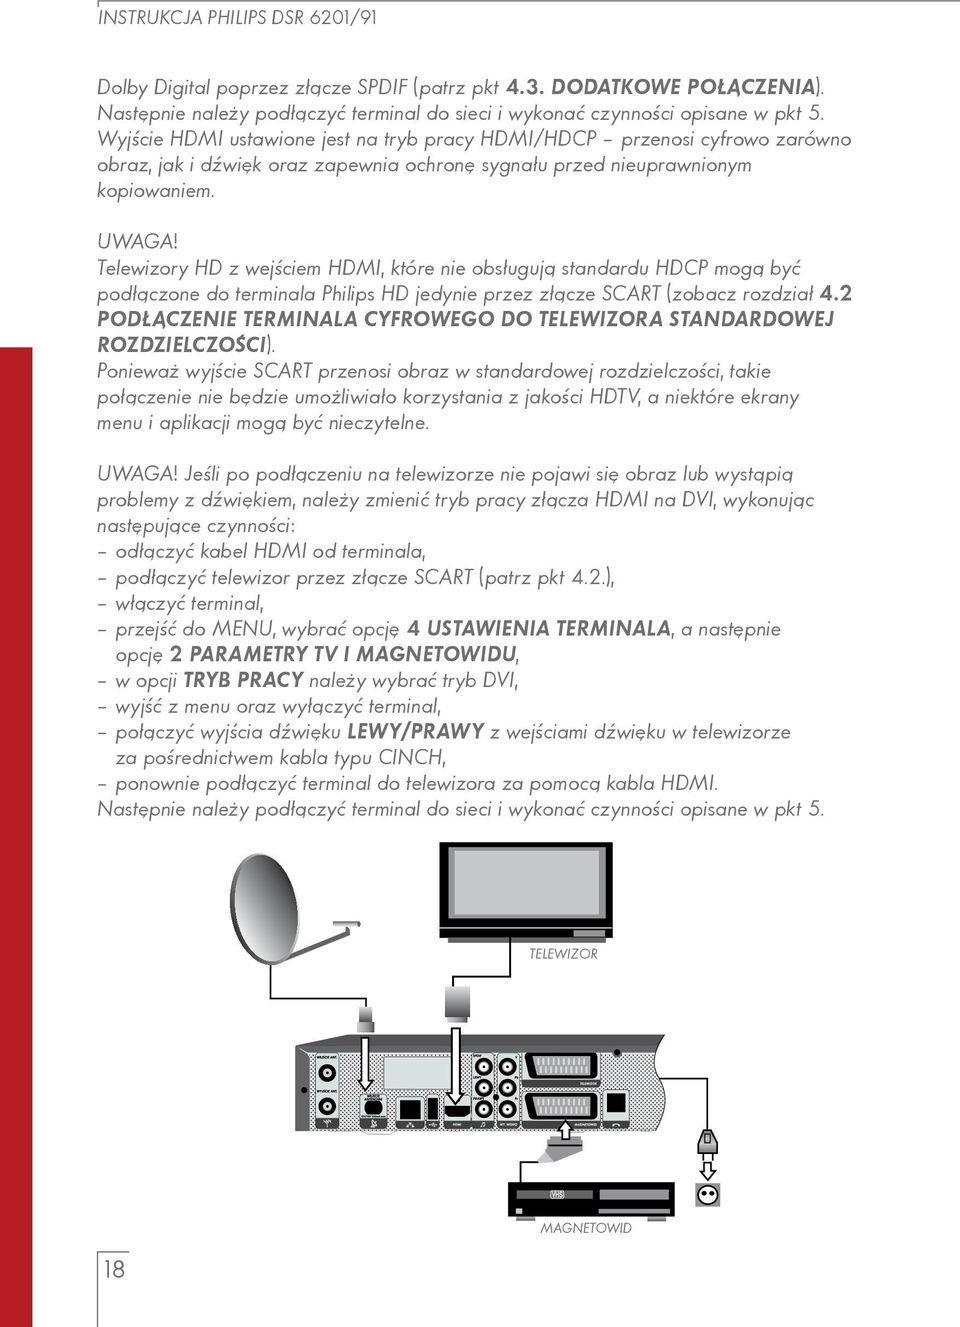 Telewizory HD z wejściem HDMI, które nie obsługują standardu HDCP mogą być podłączone do terminala Philips HD jedynie przez złącze SCART (zobacz rozdział 4.